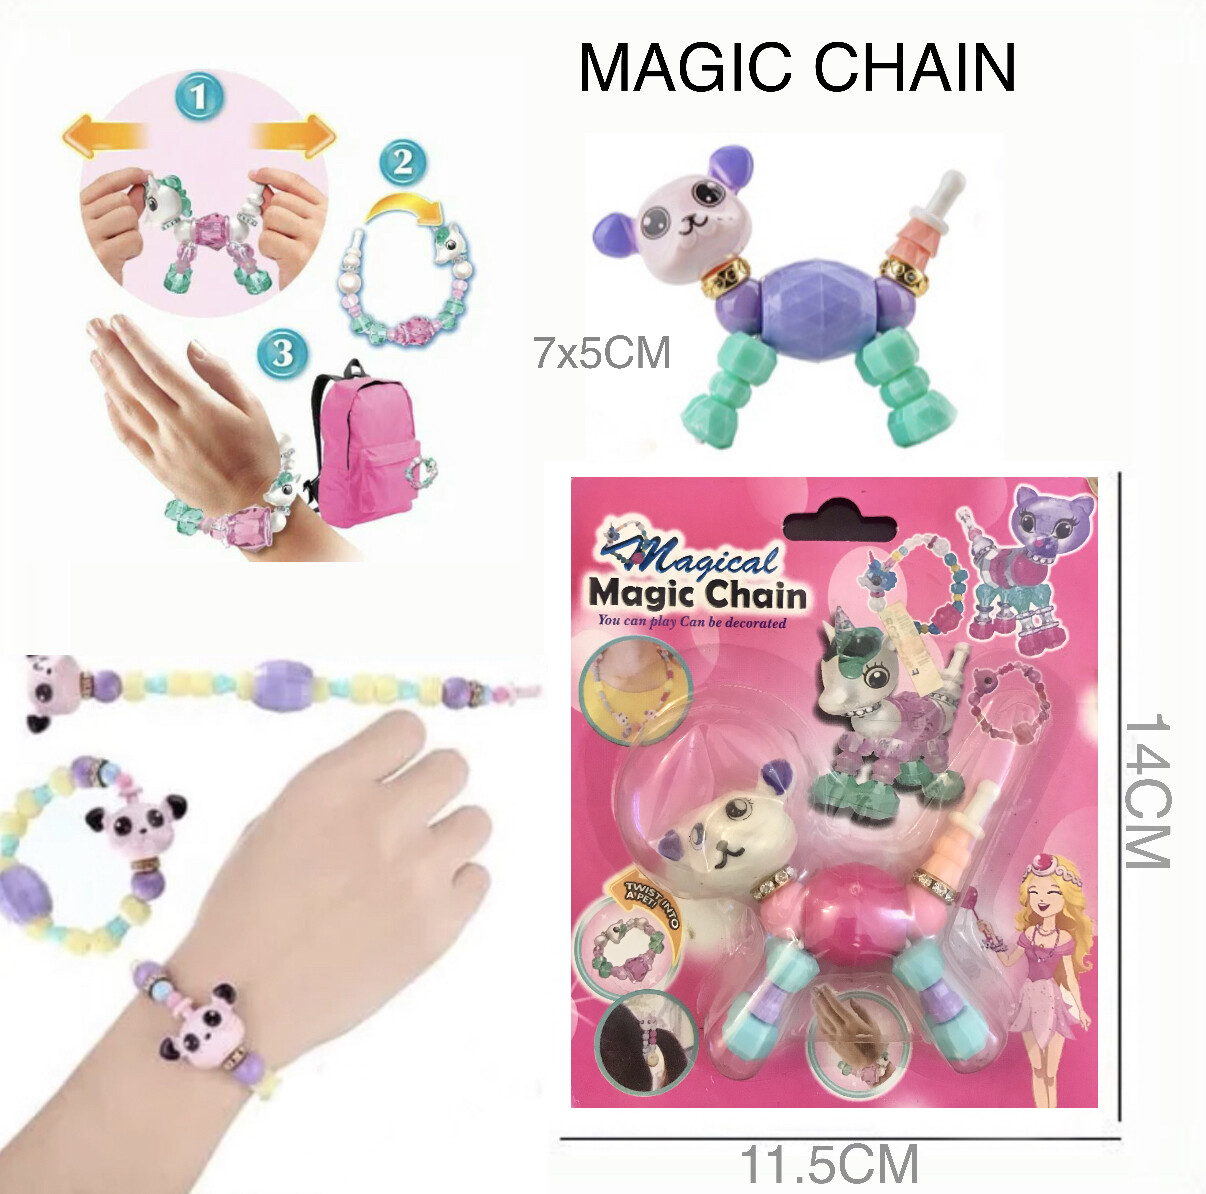 Magic Chain